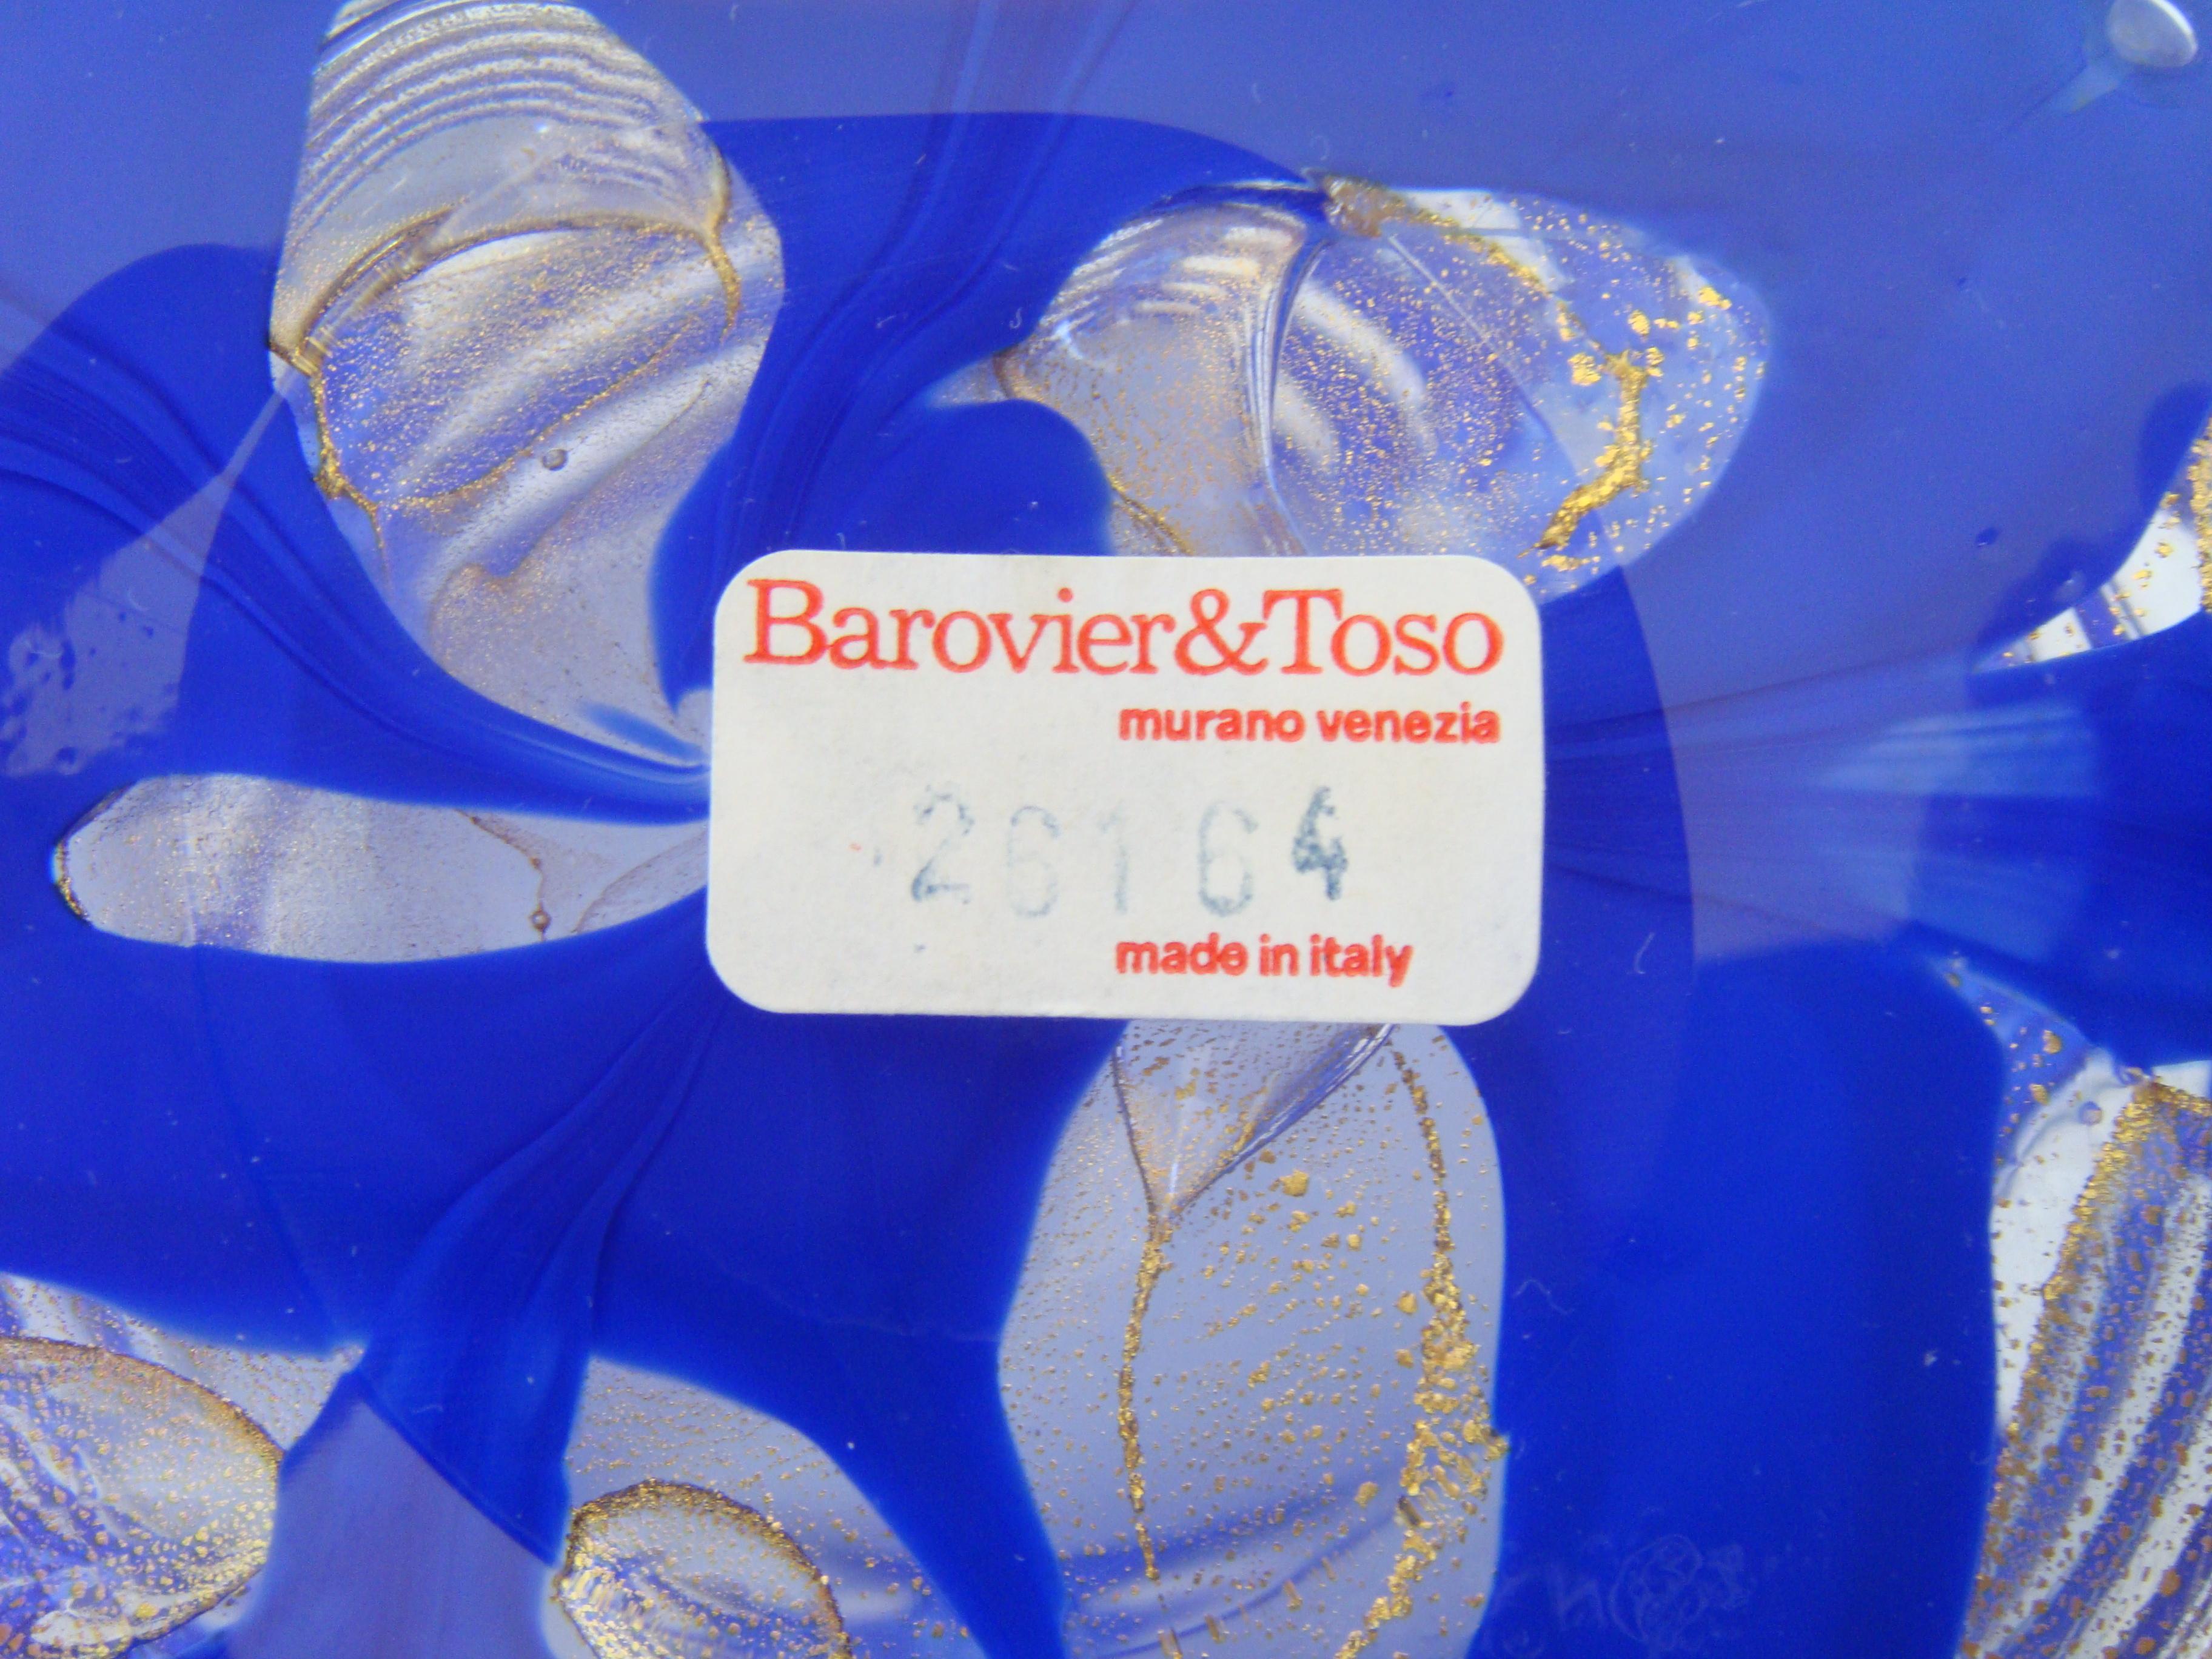 Kräftige Striche in Königsblau, vermischt mit Ösen aus Goldstaub. Auf dem Sockel der Vase sind Barovier und Toso eingraviert, außerdem befindet sich ein Papieretikett mit der Modellnummer. Außerdem ist auf der Oberseite ein durchsichtiges